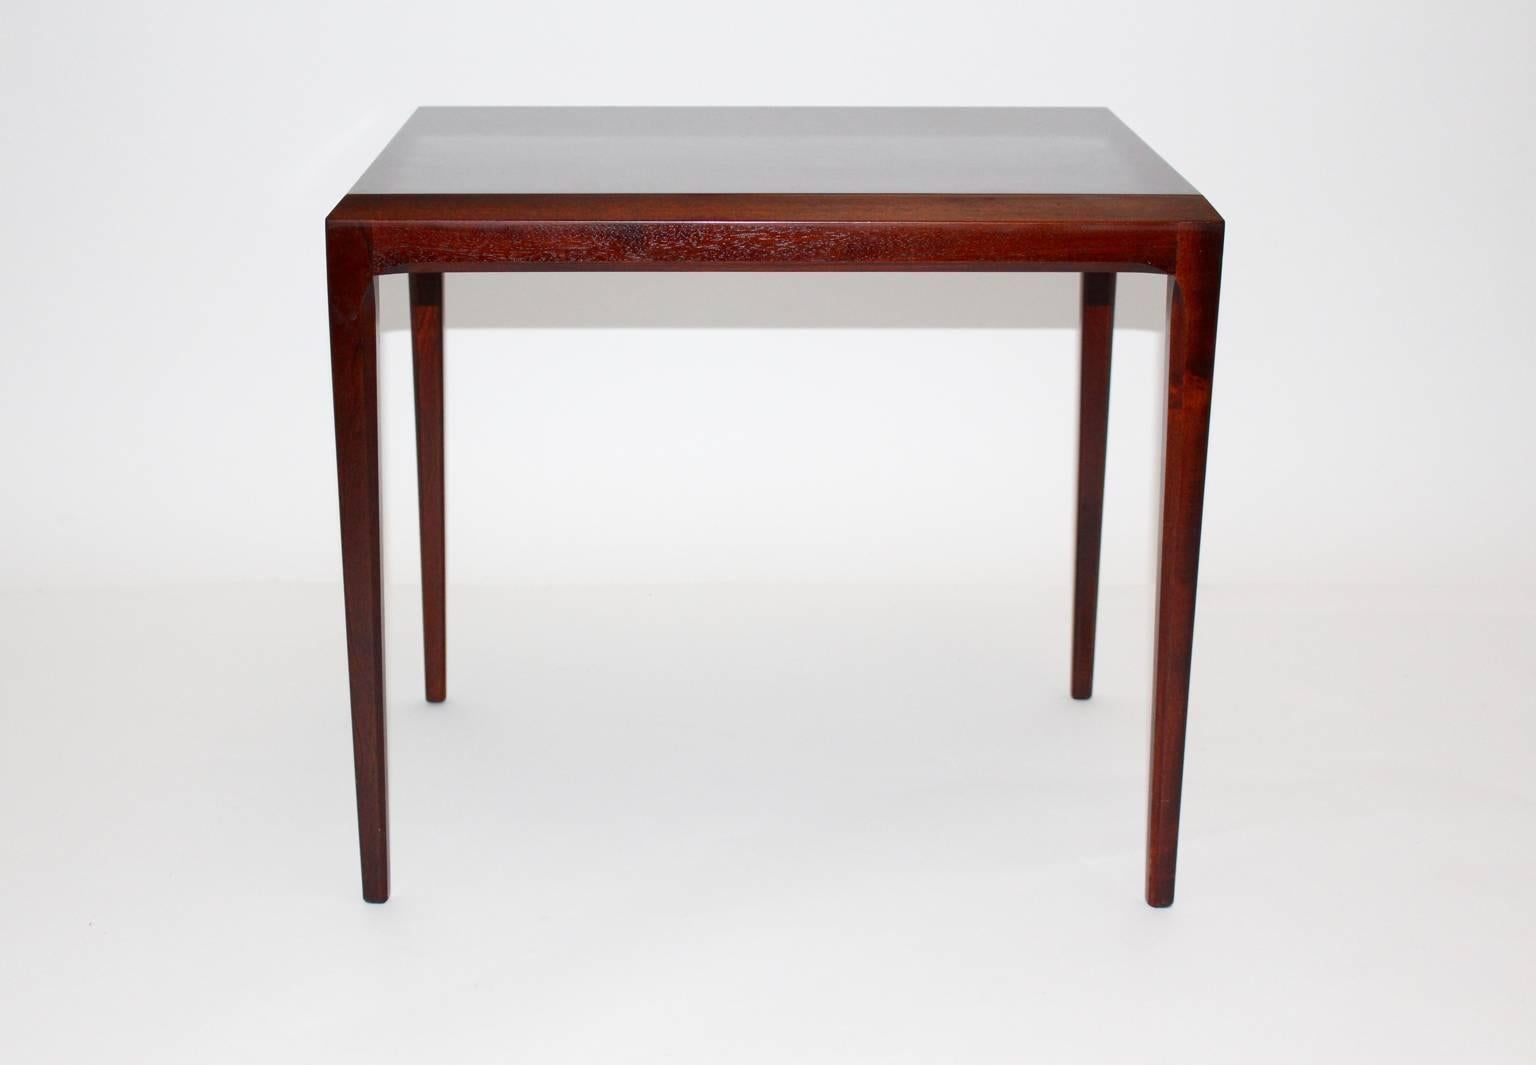 Table de canapé ou table d'appoint en teck Mid Century Modern Scandinavian Modern conçue par Johannes Andersen, vers 1963, Danemark.
Les bords arrondis constituent une caractéristique particulière.
La table aux bords arrondis en teck est en très bon